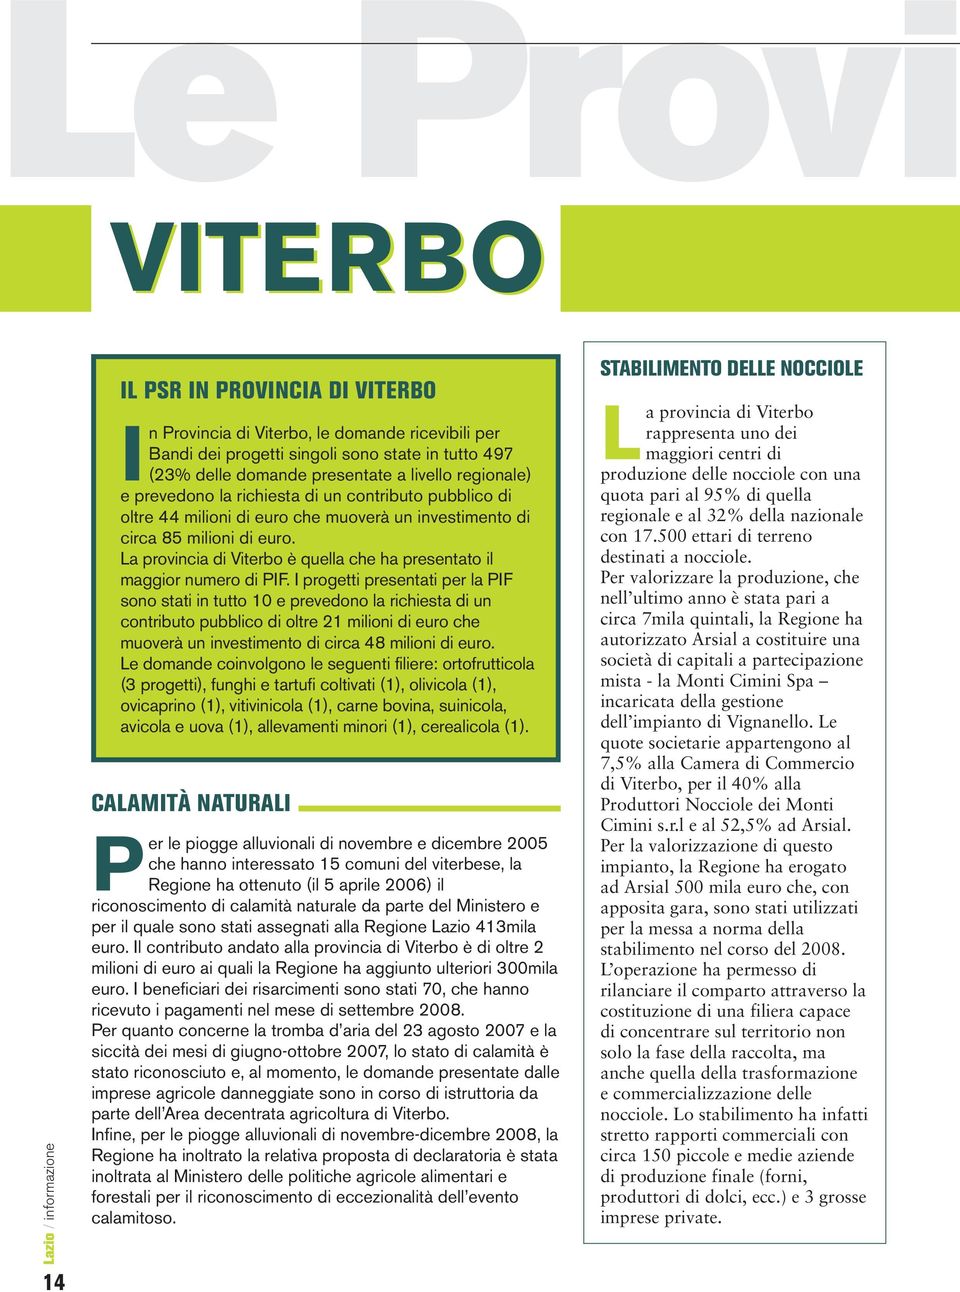 La provincia di Viterbo è quella che ha presentato il maggior numero di PIF.